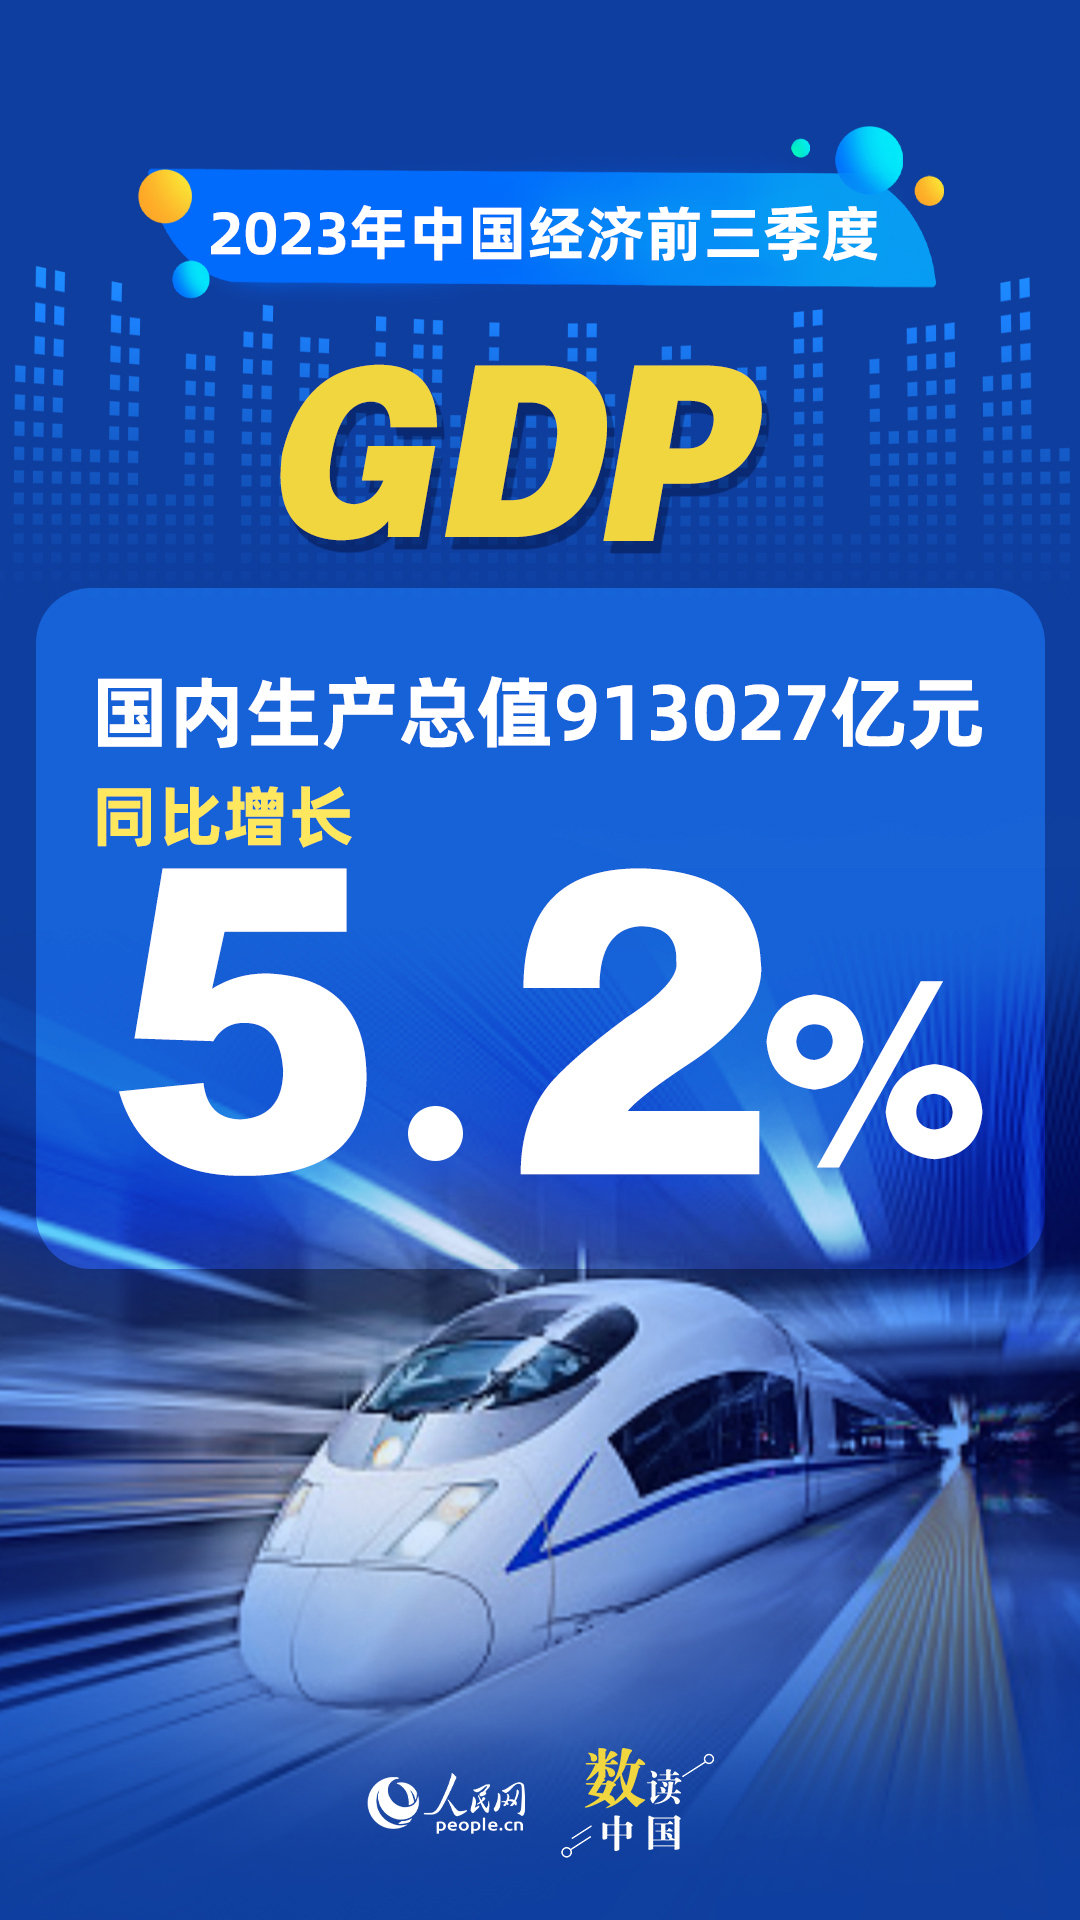 万向官方：数读中国 | 前三季度国民经济持续恢复向好 积极因素累积增多